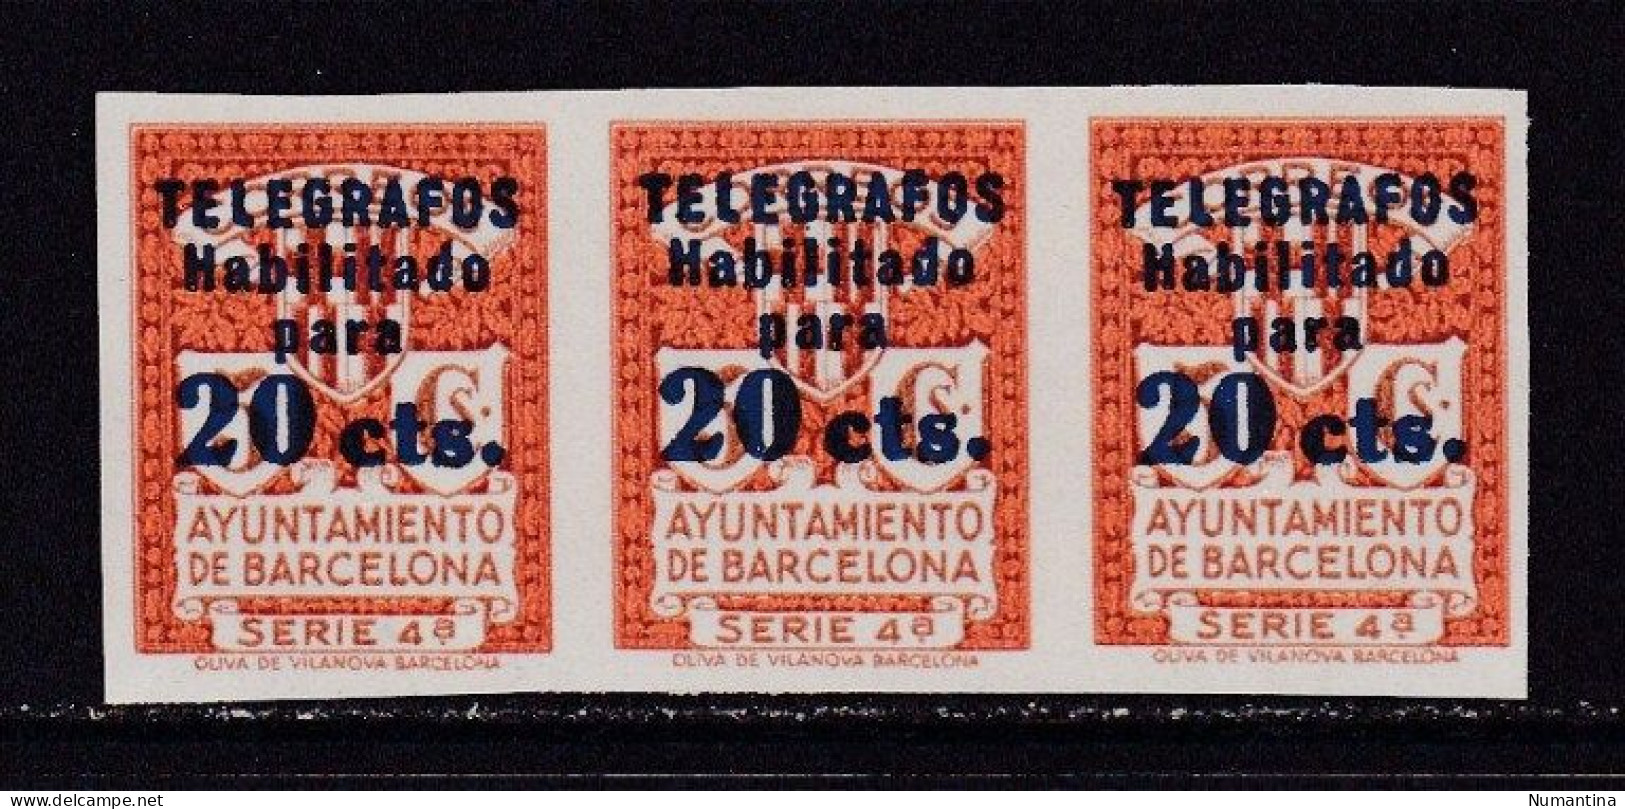 1934 - España - Barcelona - Telegrafos - Edifil 11s - Tipo B Habilitado - Bloque 3 - MNG - Valor 276 € - Barcelona